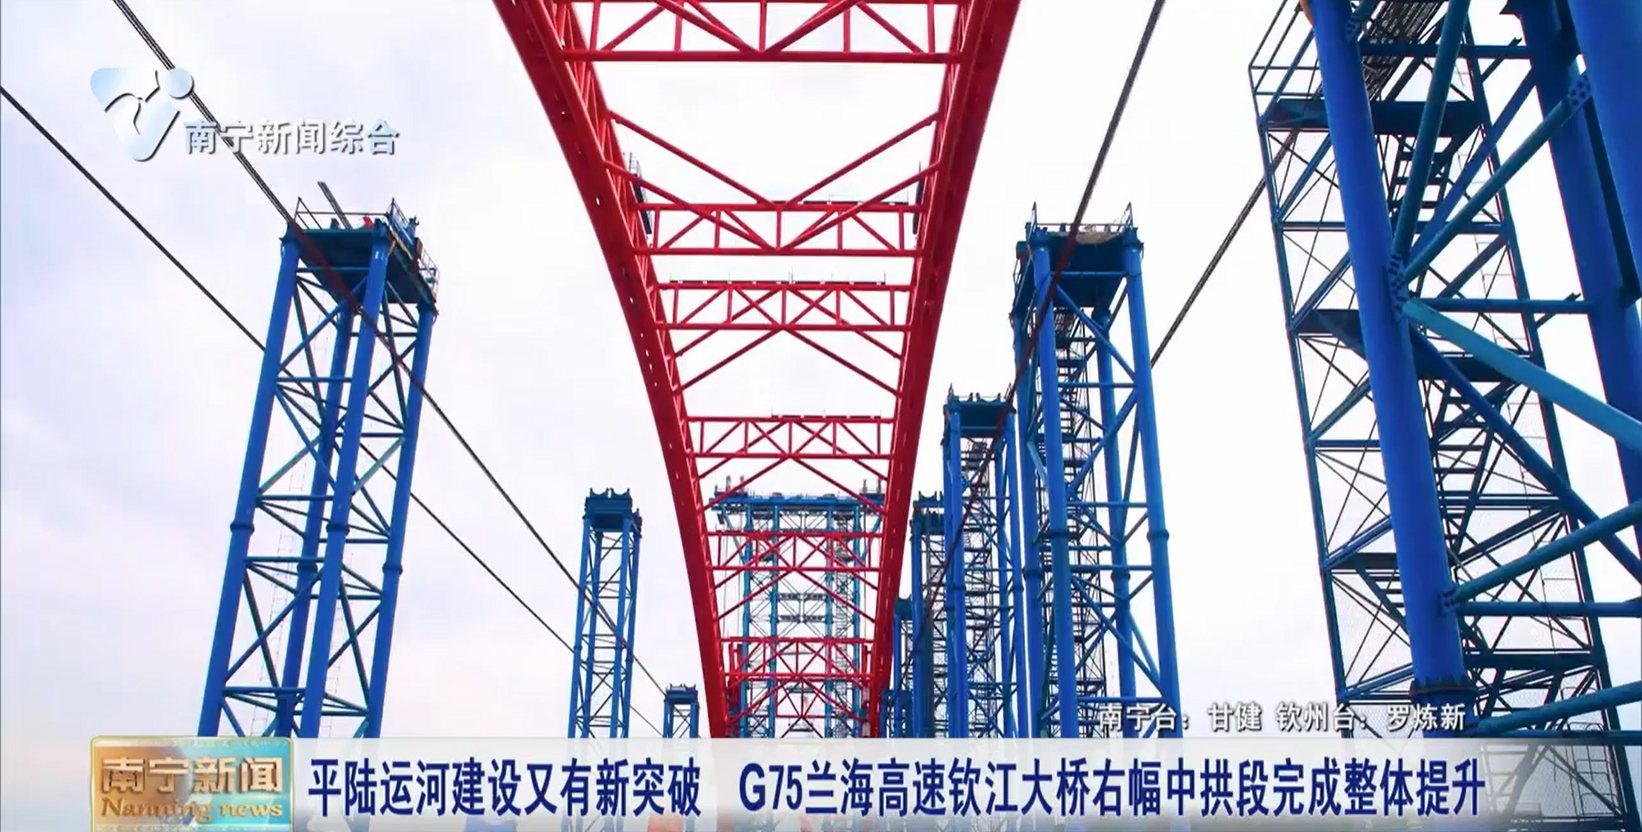 平陆运河建设又有新突破  G75兰海高速钦江大桥右幅中拱段完成整体提升 